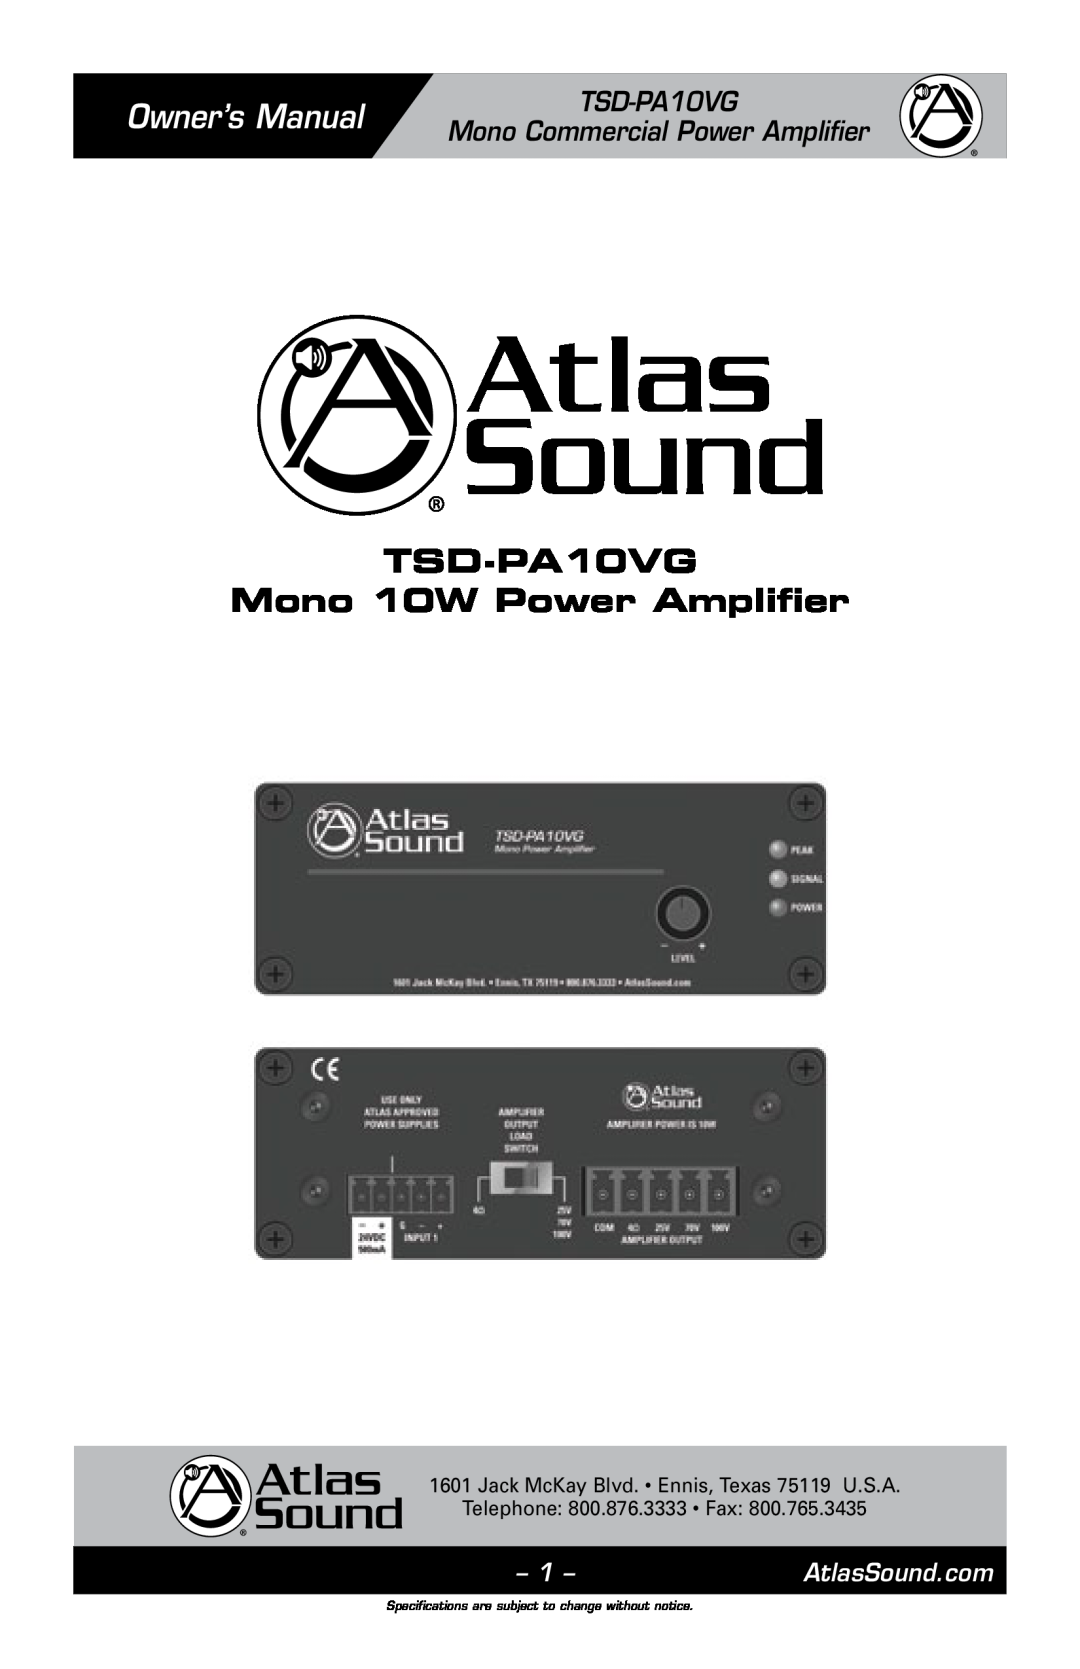 Atlas Sound owner manual TSD-PA10VG Mono Commercial Power Amplifier, TSD-PA10VG Mono 10W Power Amplifier 